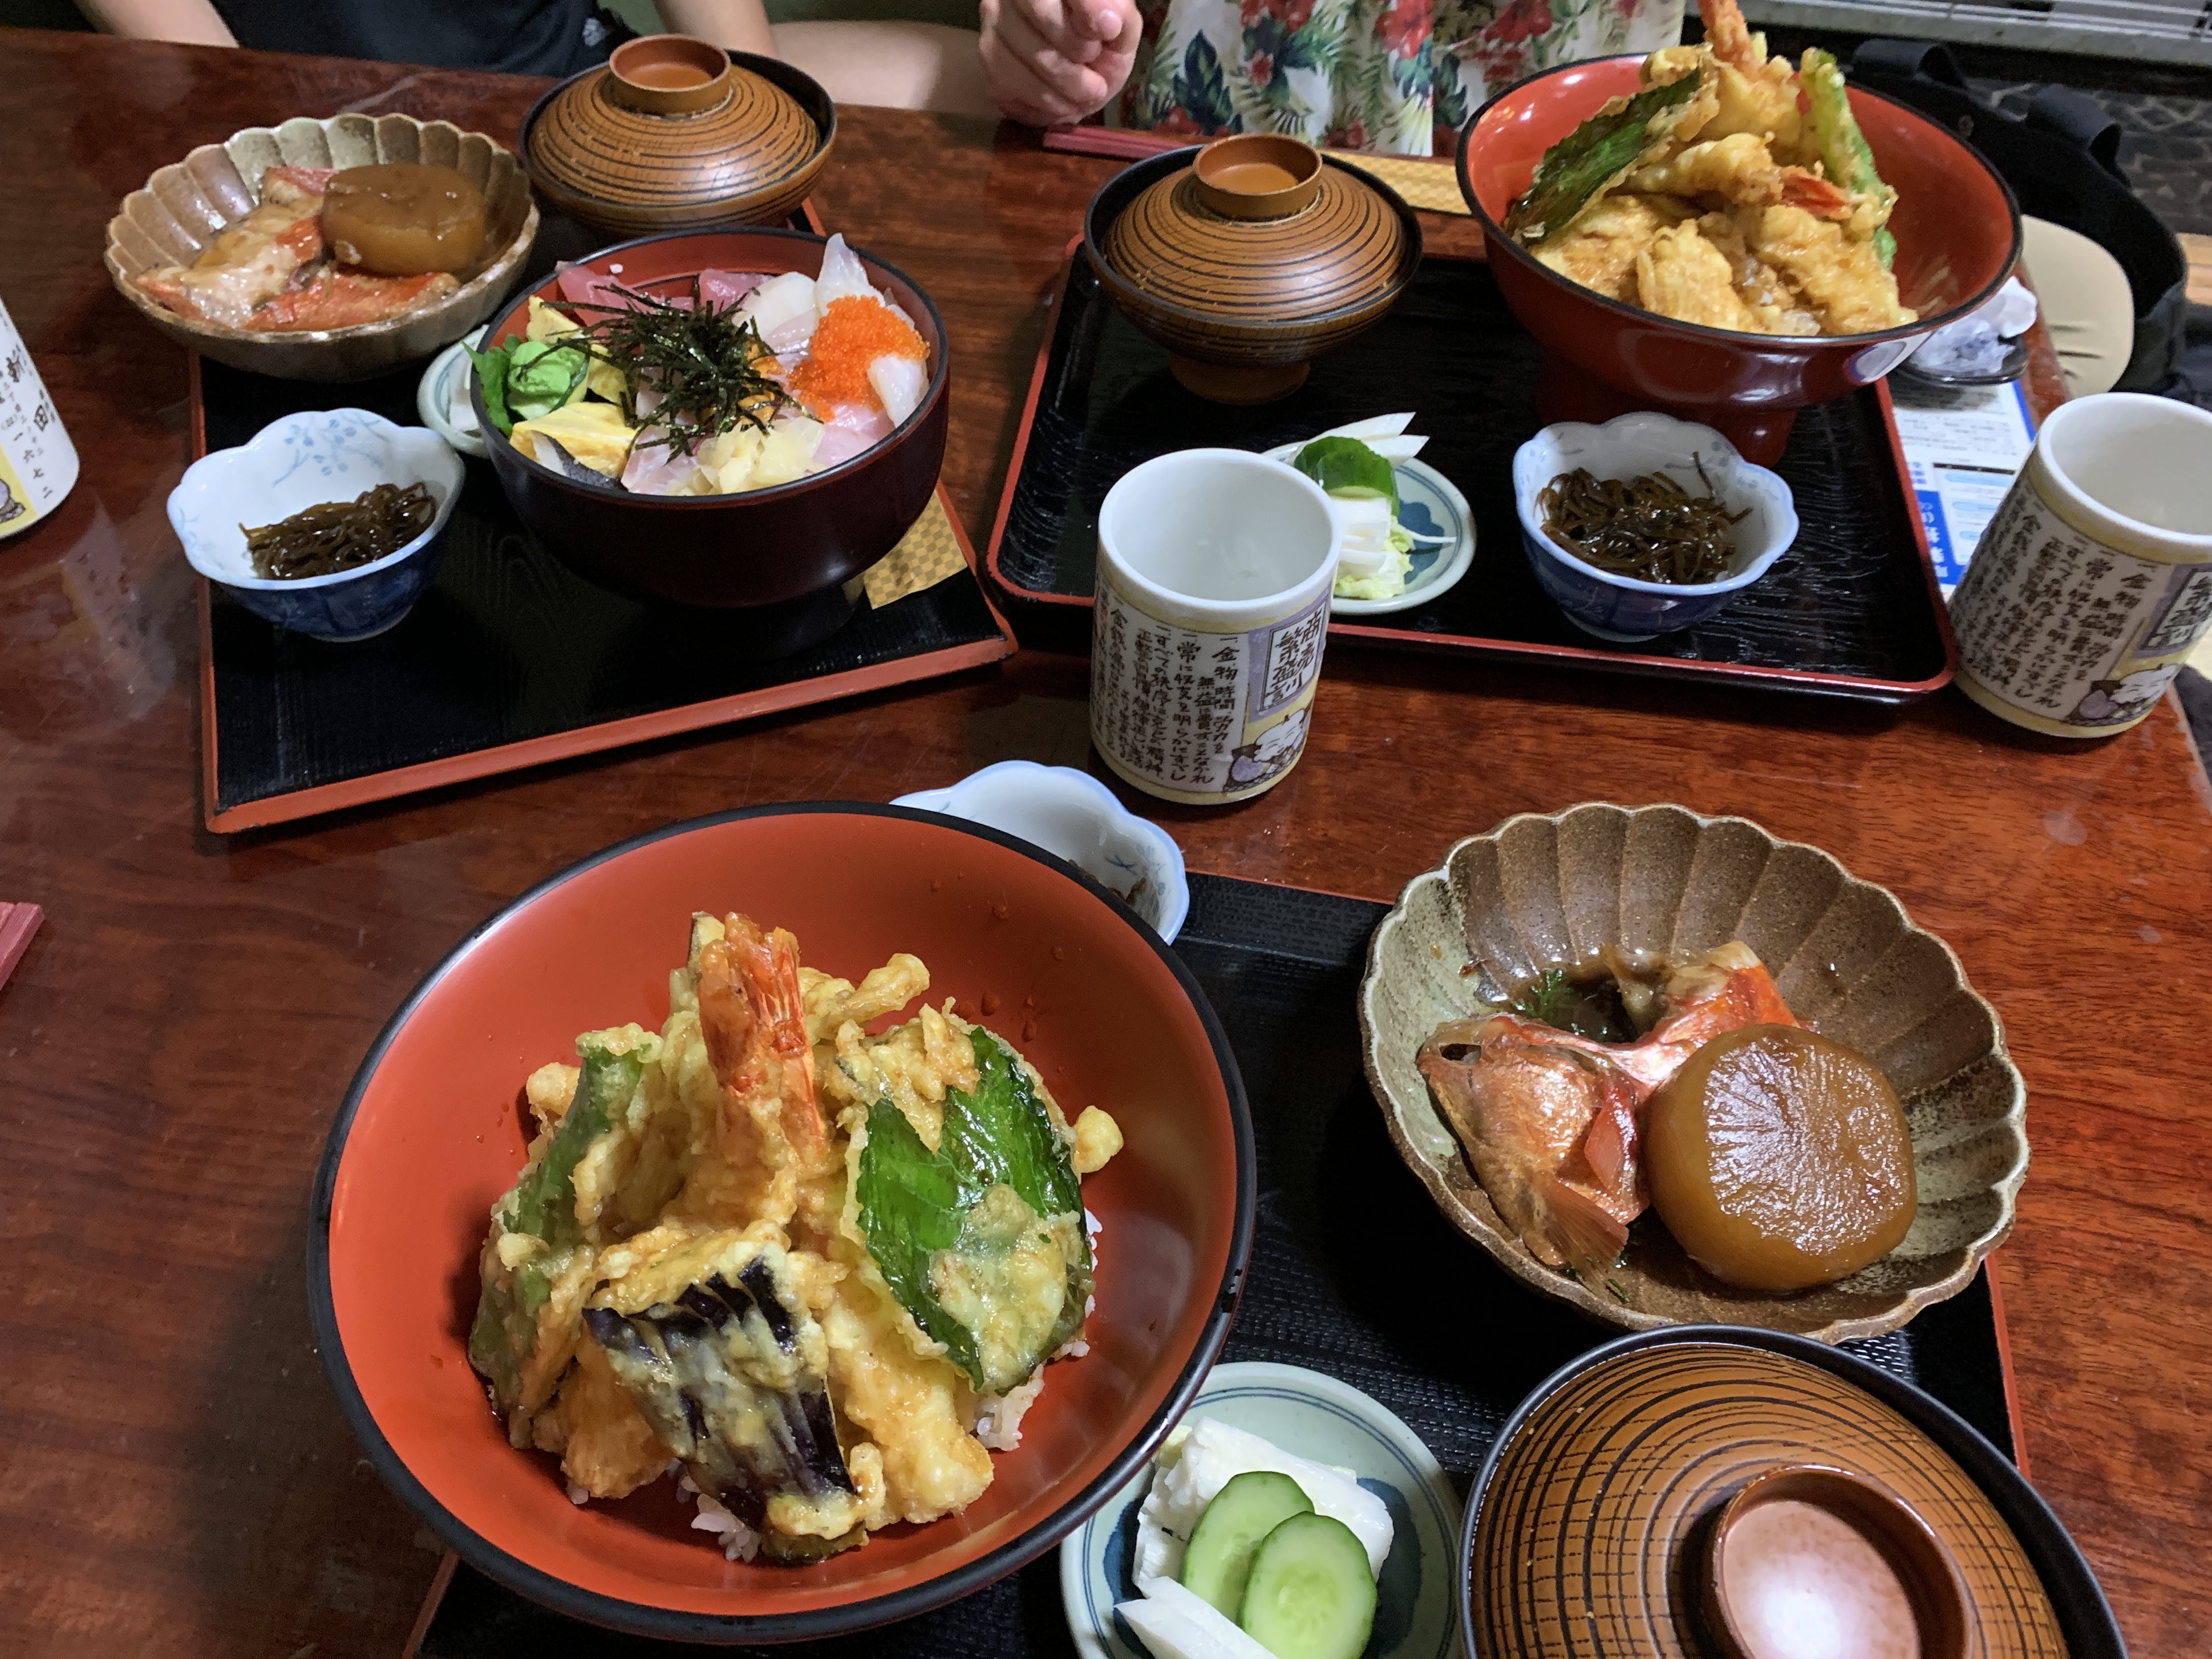 japanisches Essen